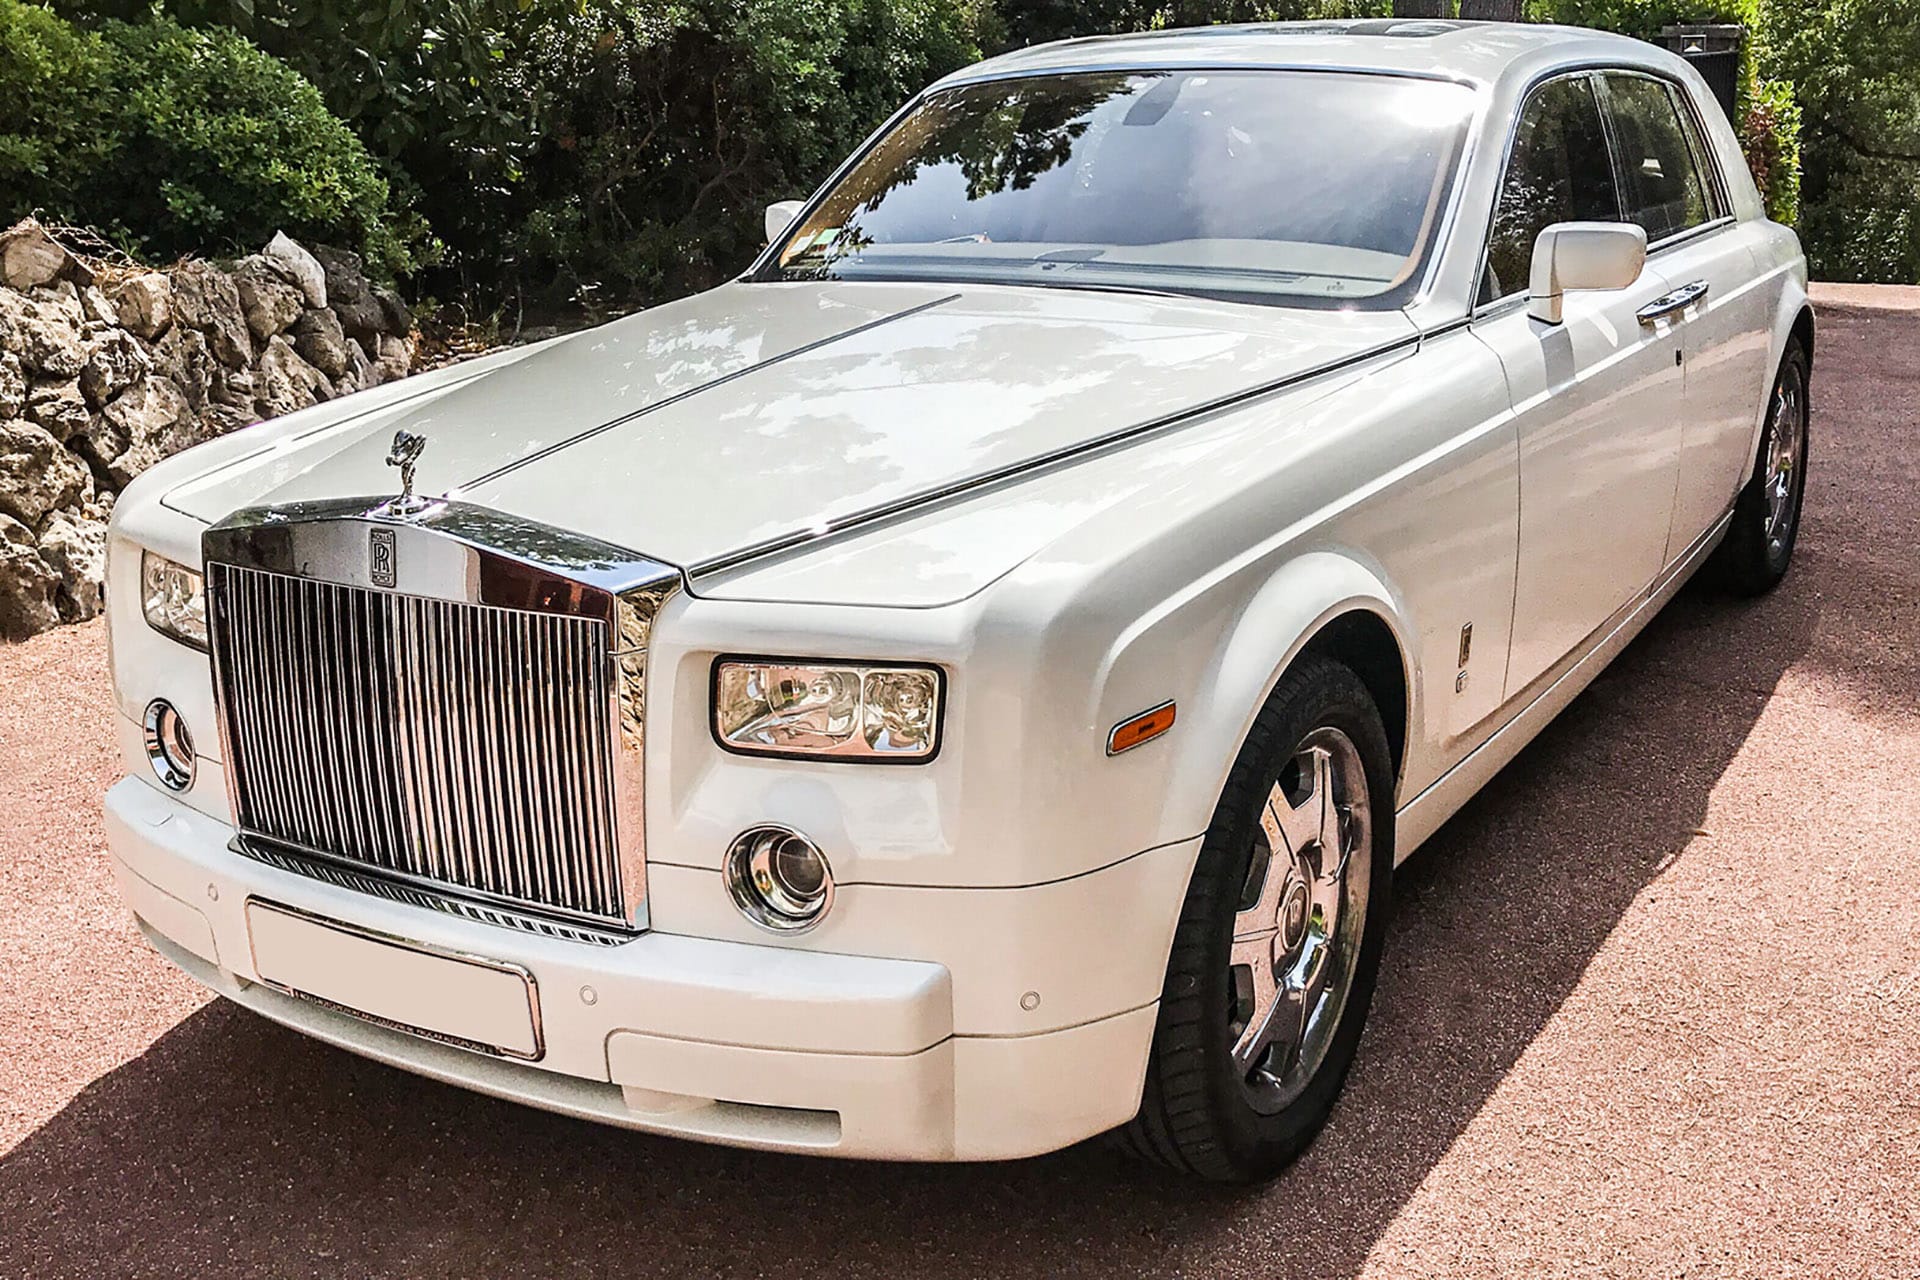 La Rolls Royce Phantom et son toit étoilé